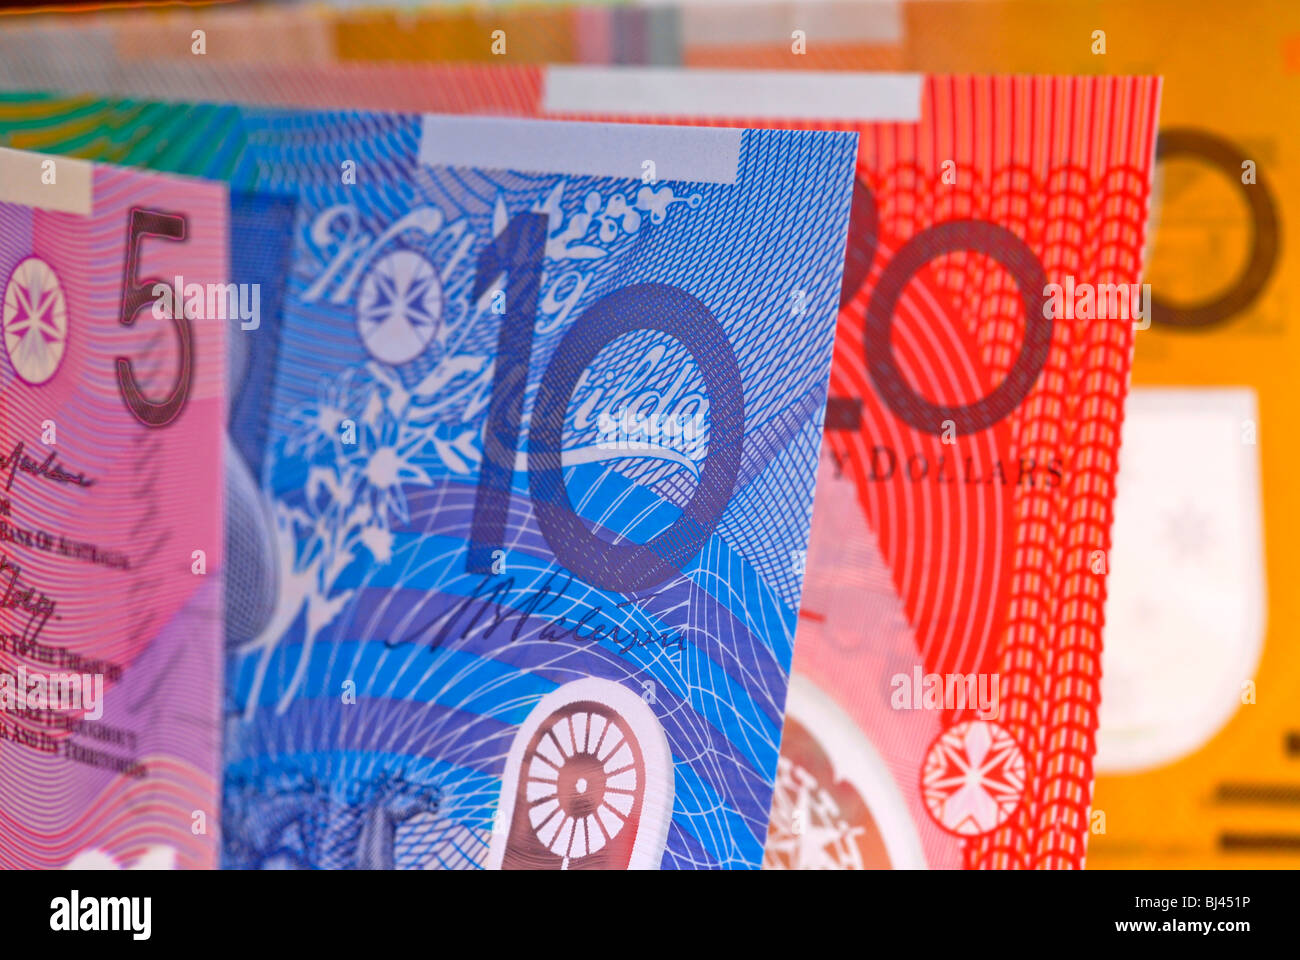 Australian Dollars Stock Photo